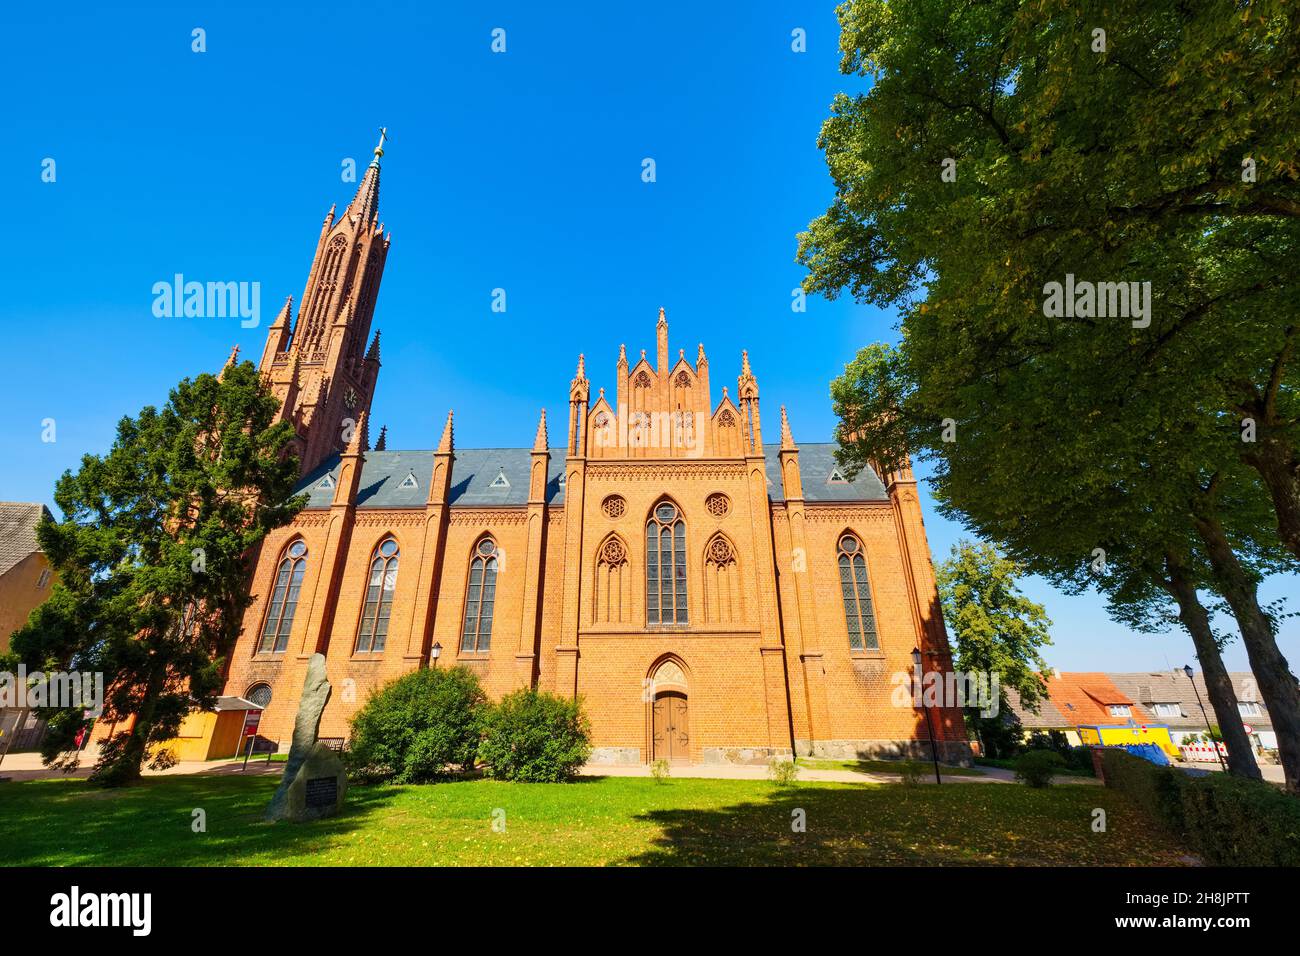 Abbey church Malchow, Mecklenburg-Western Pomerania, Germany Stock Photo